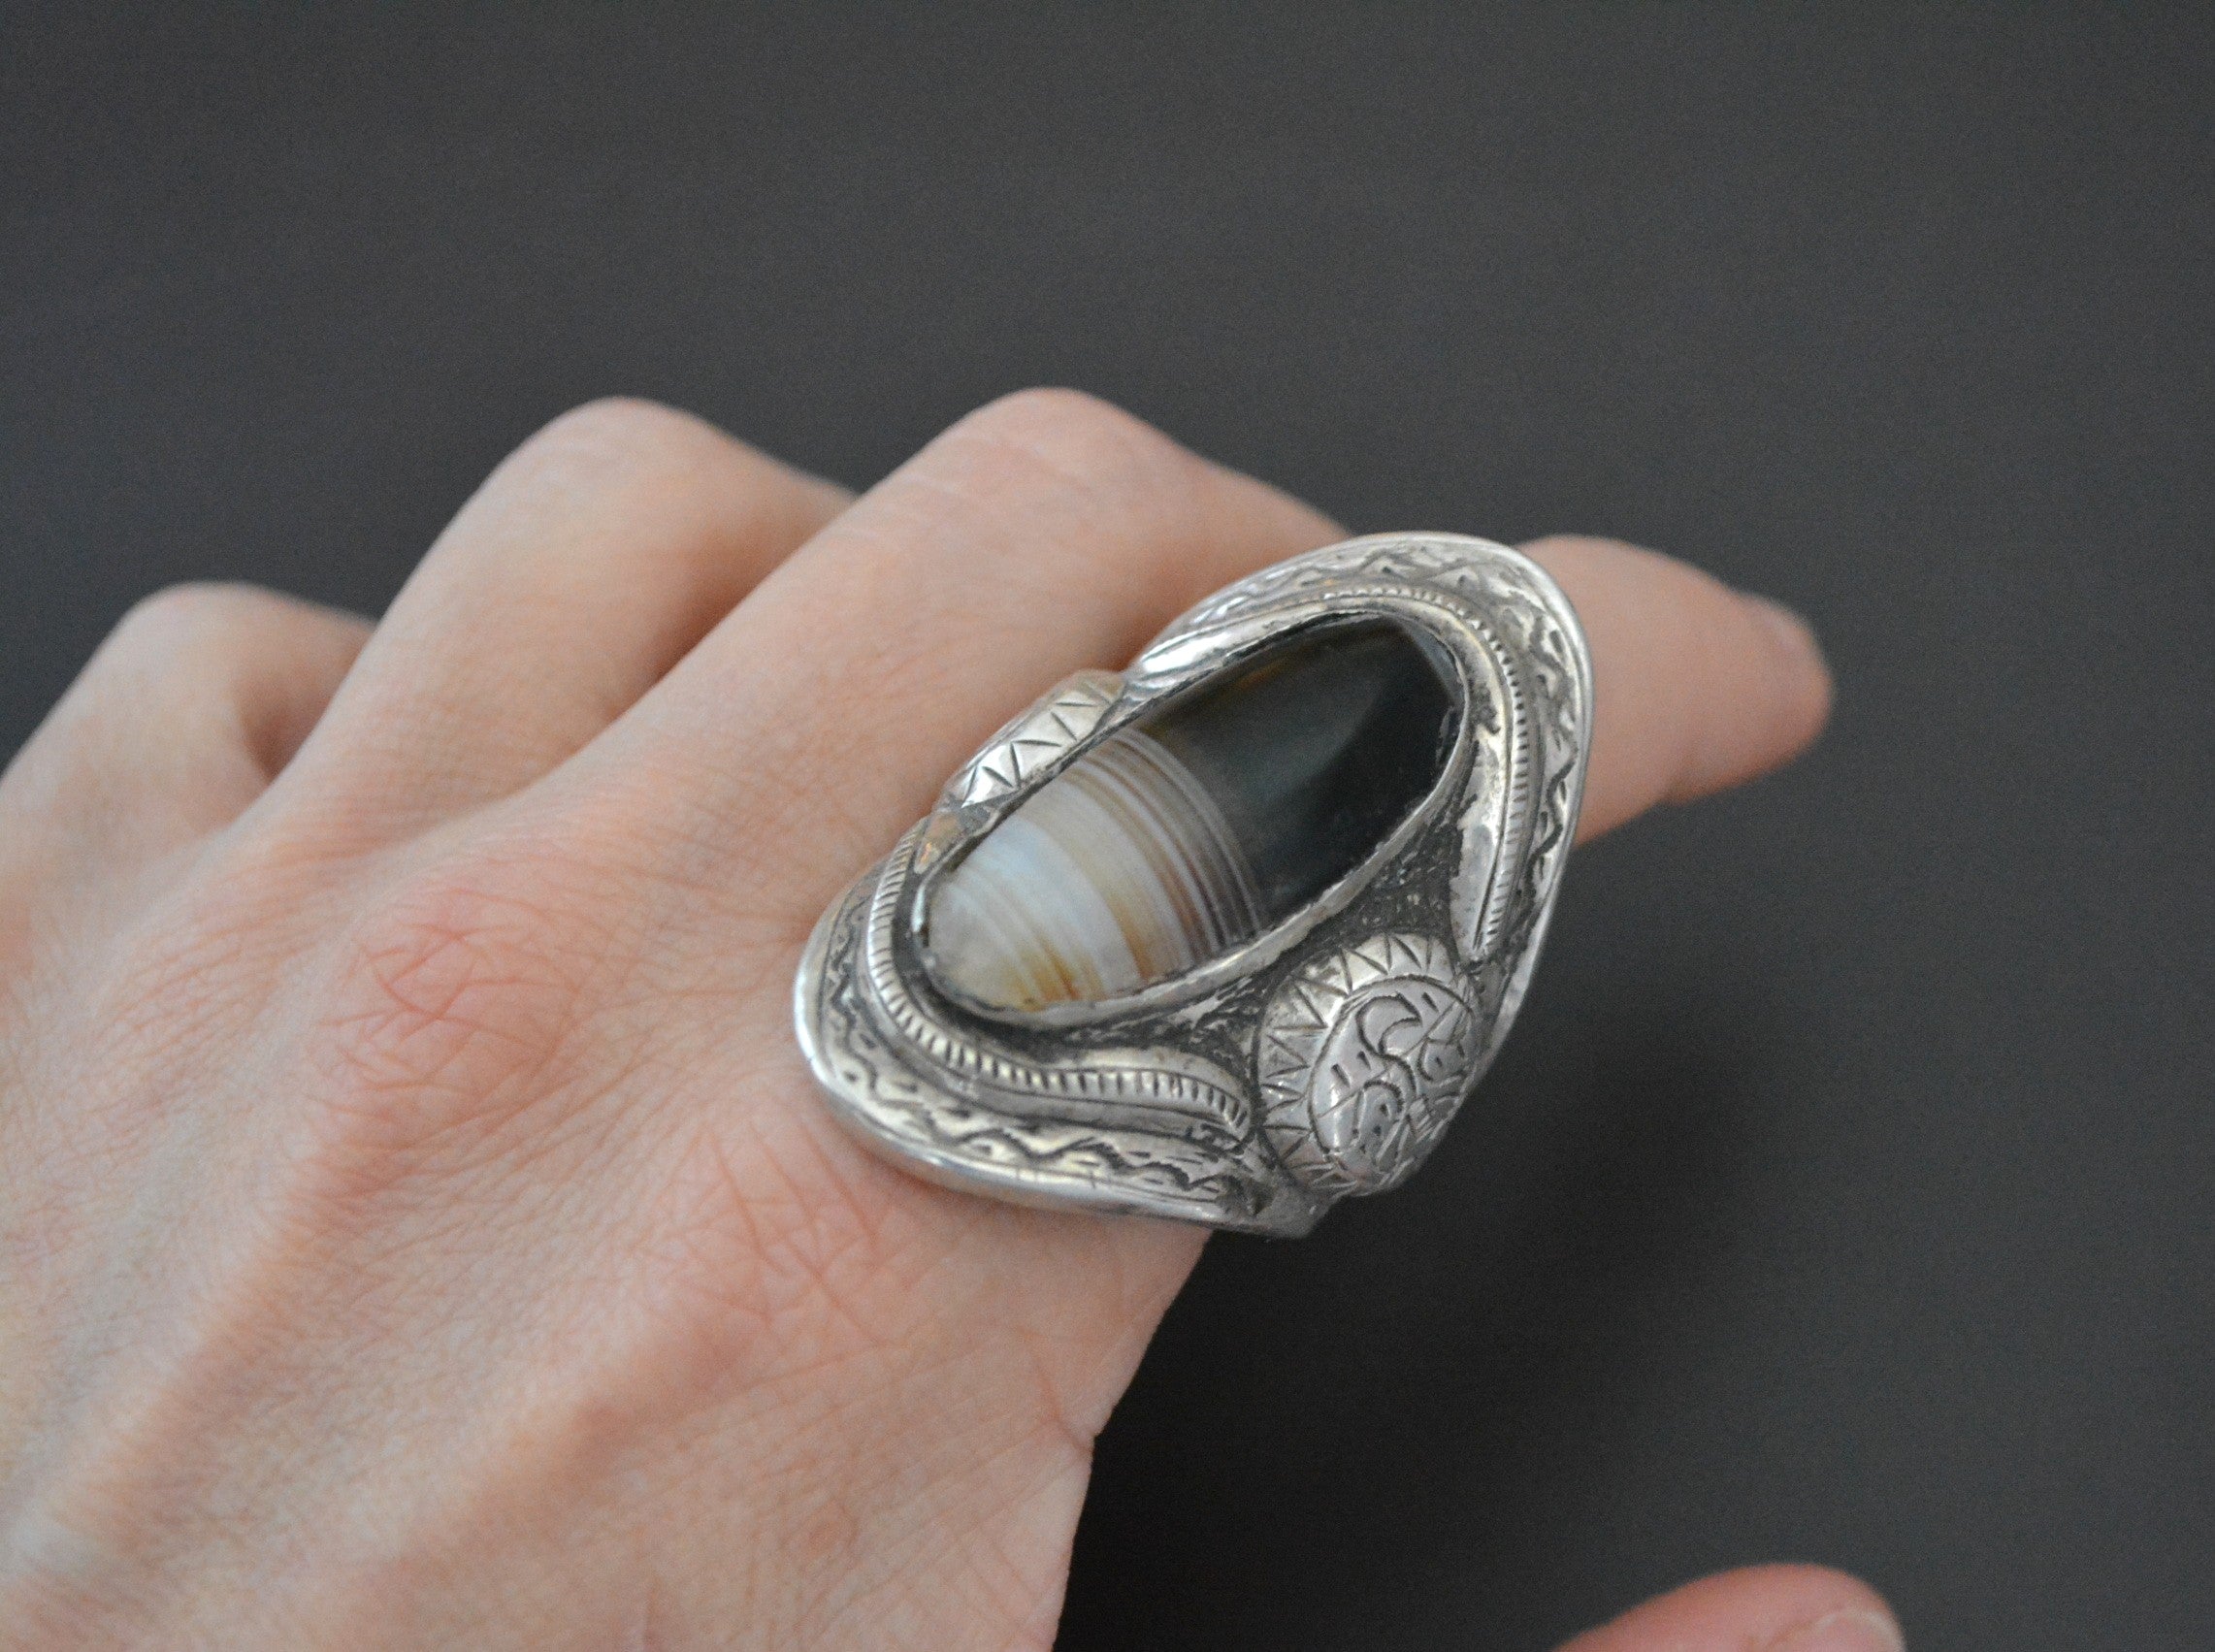 Huge Tibetan Banded Agate Ring - Size 12.5